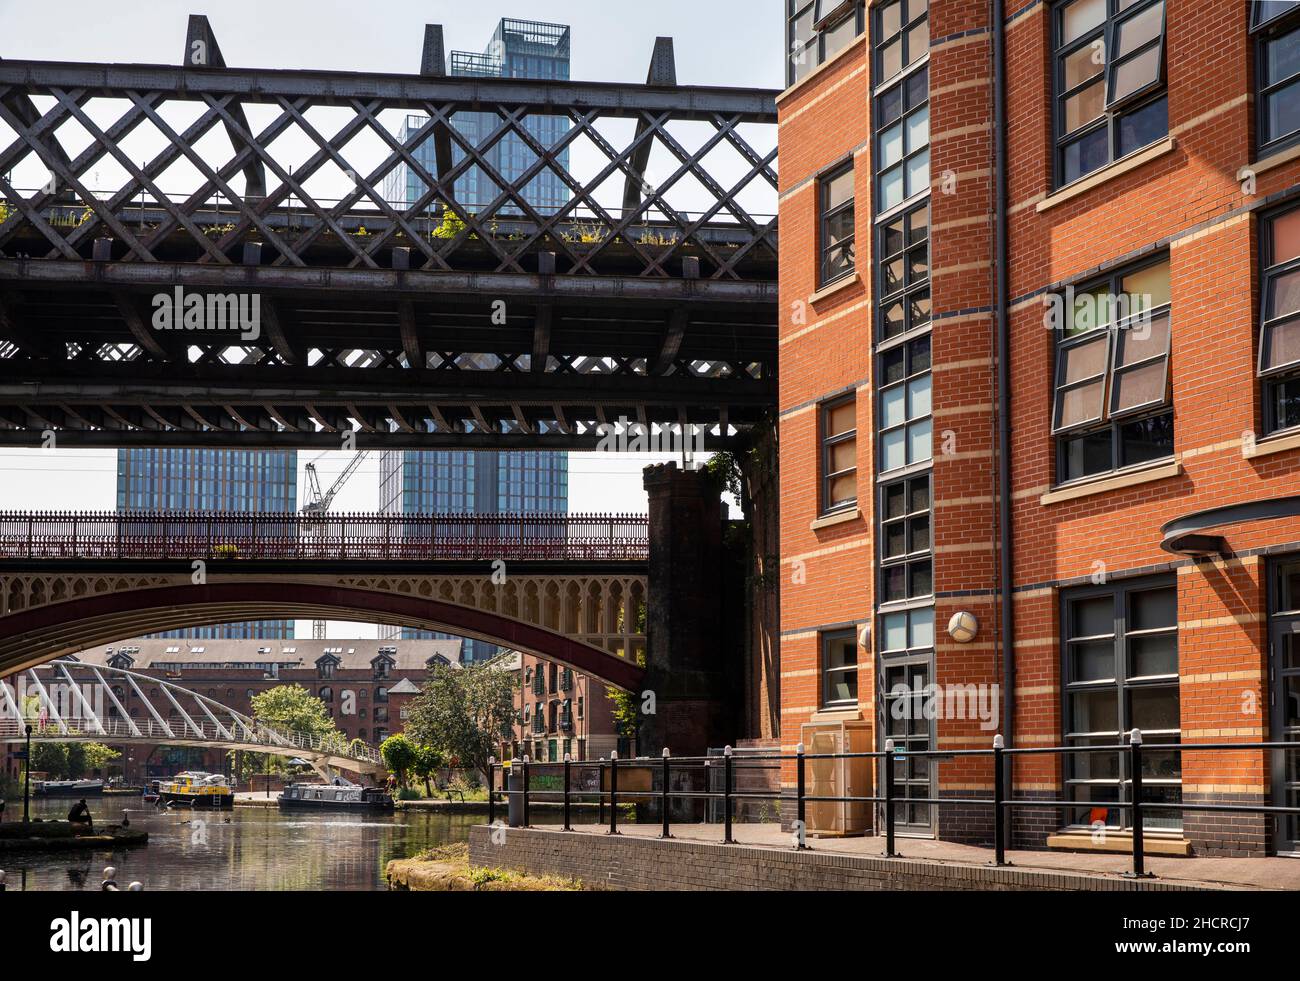 Royaume-Uni, Angleterre, Manchester, Castlefield, viaduc ferroviaire redondant et Merchant’s Bridge traversant le bassin du canal de Bridgewater Banque D'Images